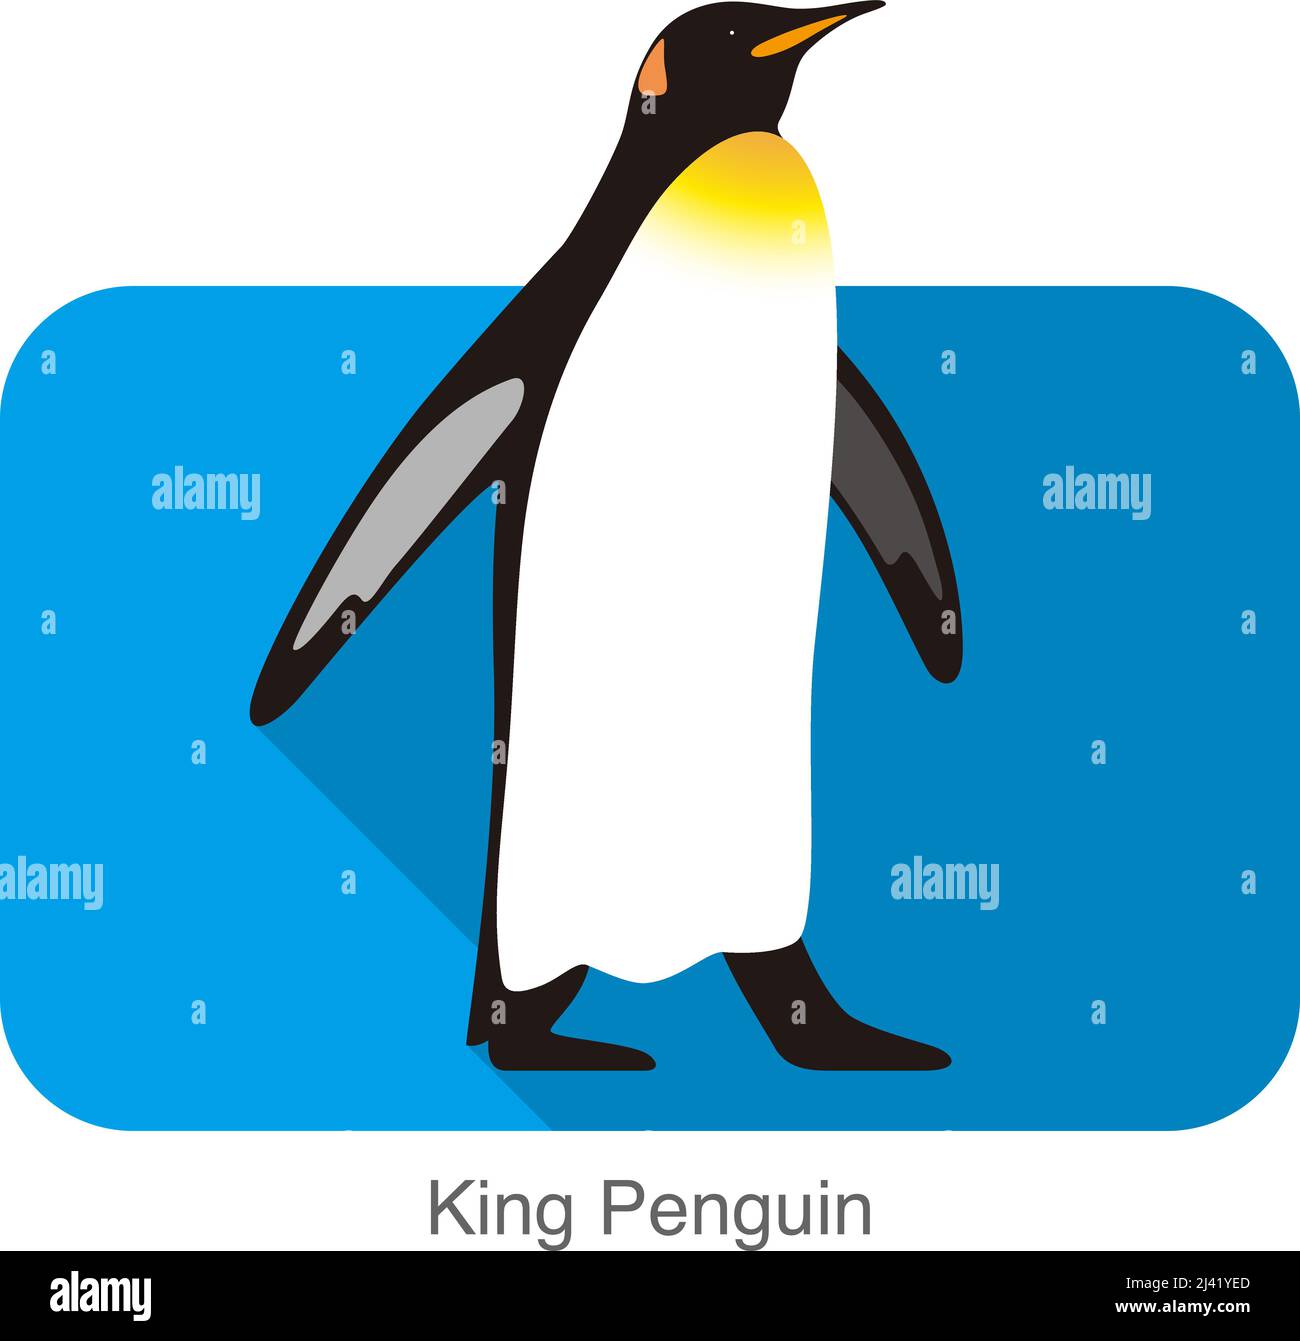 King Penguin Penguin, regardez l'article série de semences, vector illustration Illustration de Vecteur